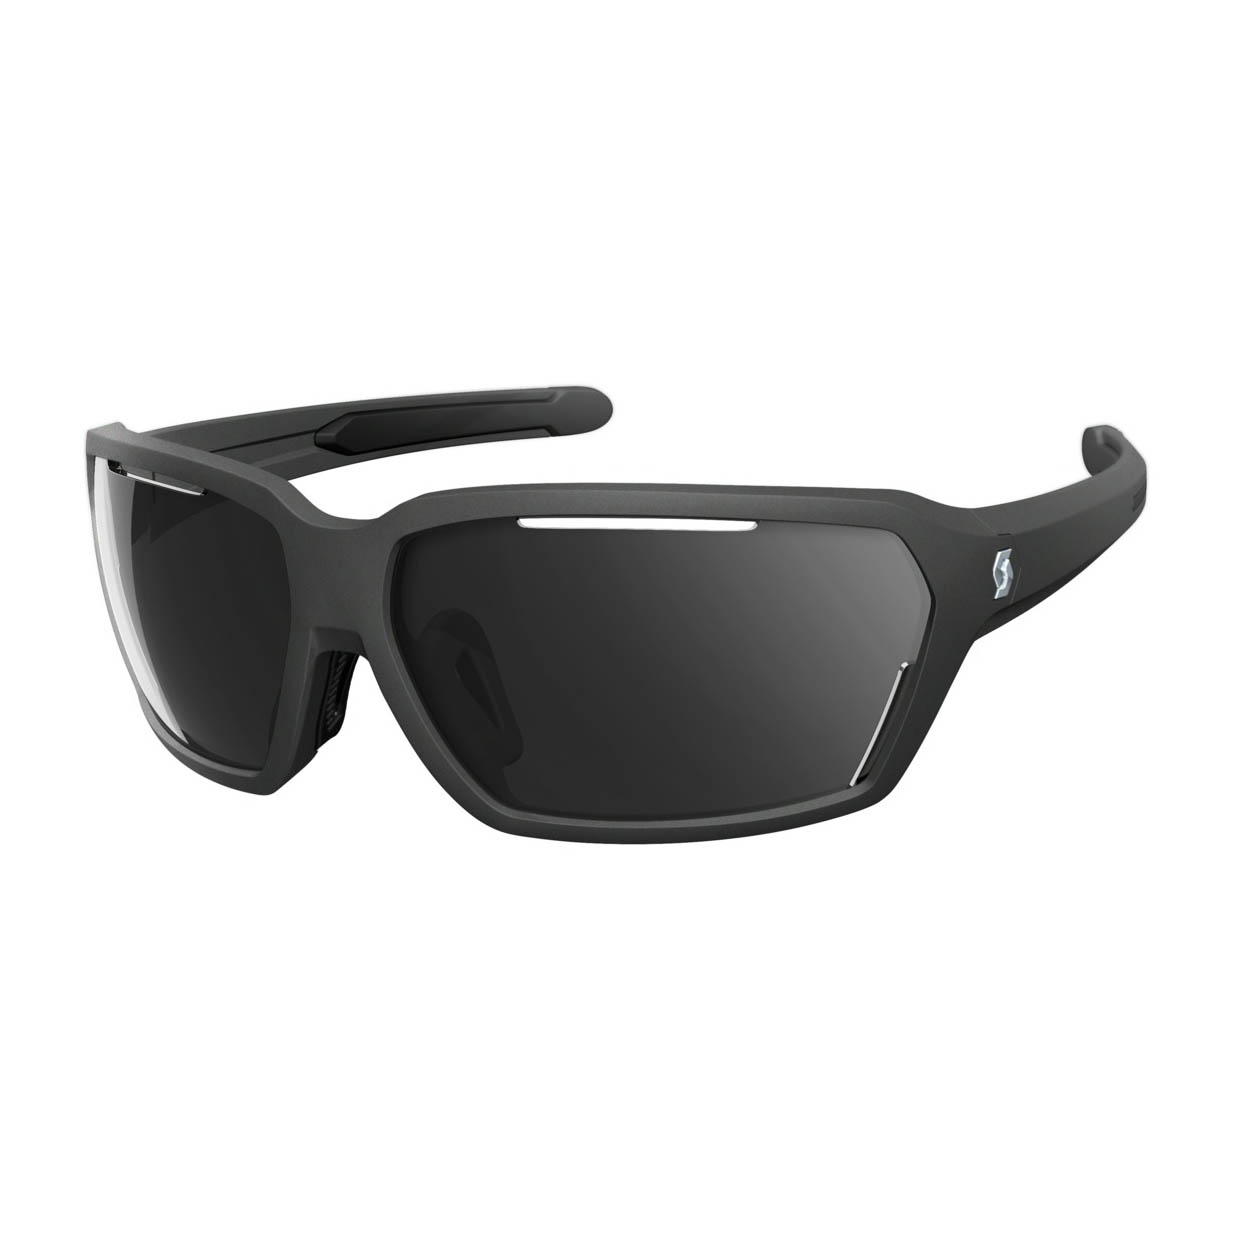 Scott Sonnenbrille Vector, schwarz matt, grau